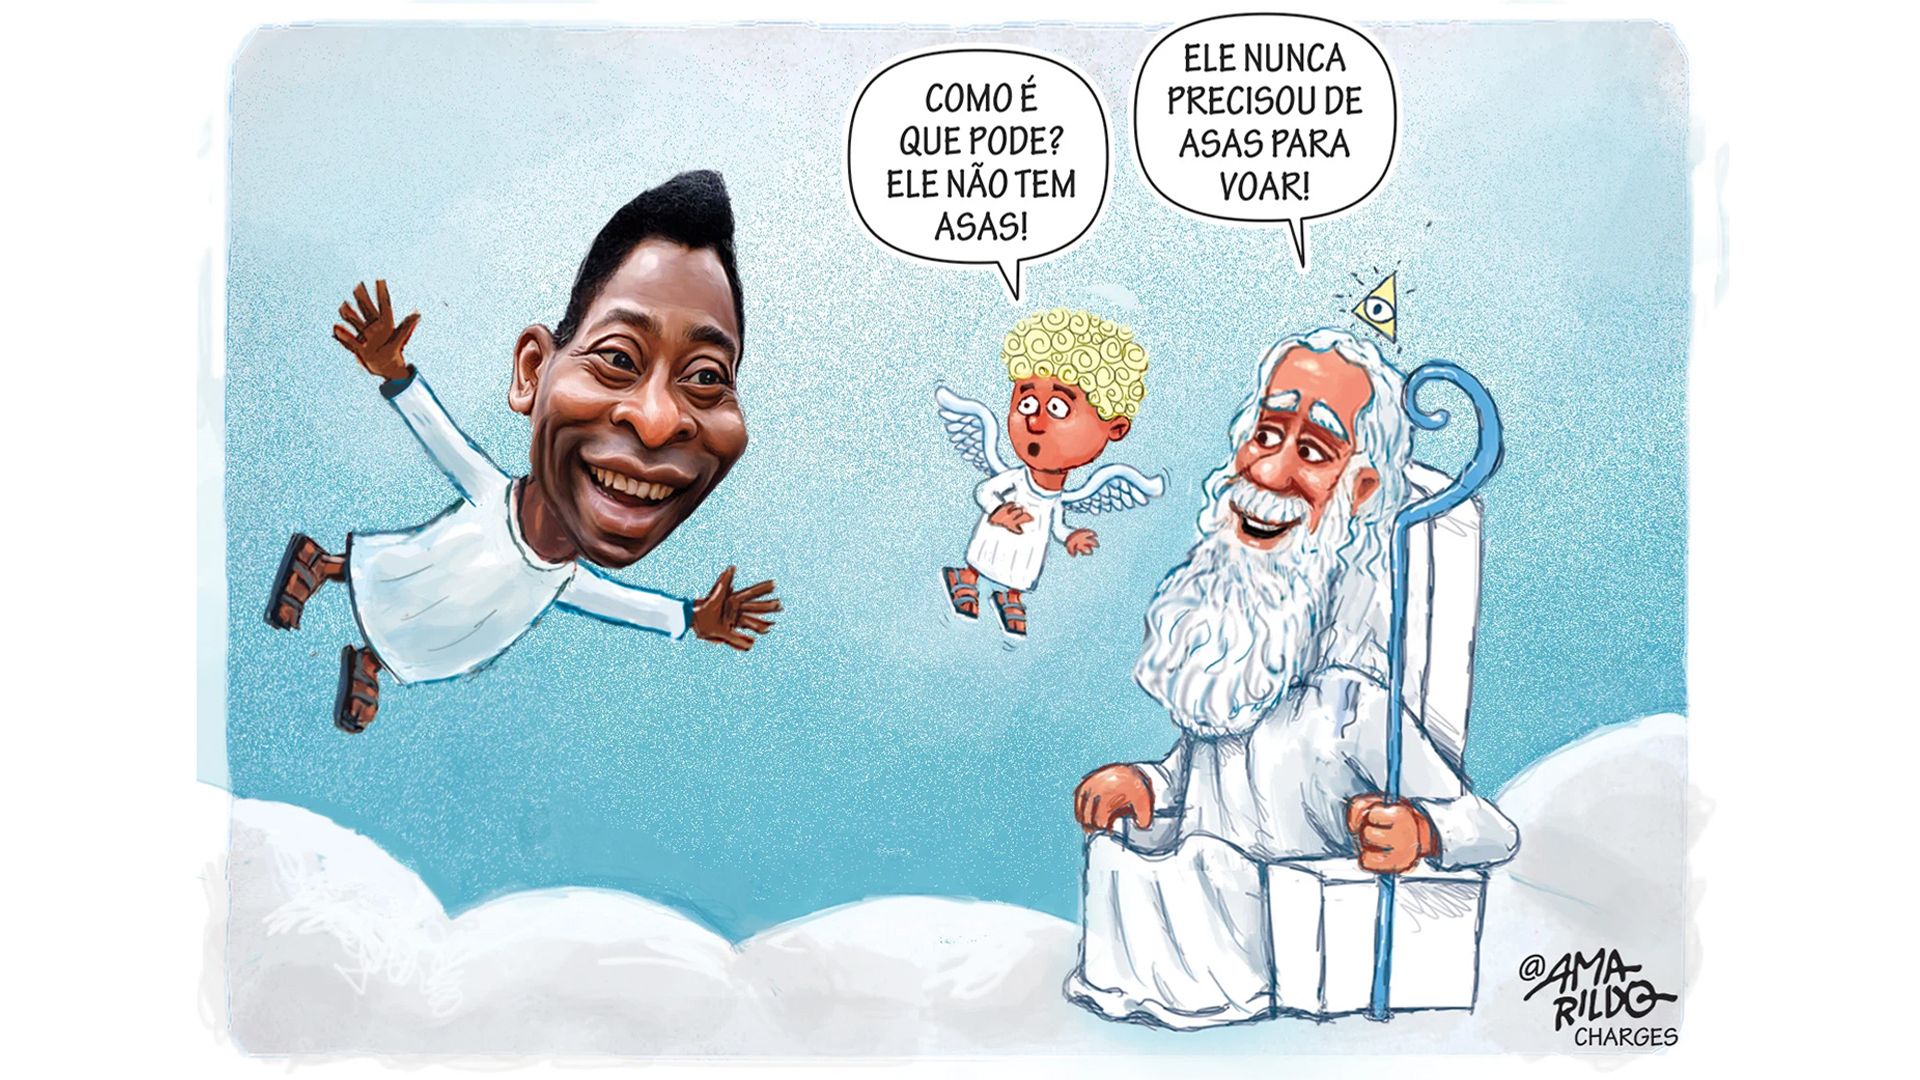 "Sem Asas", em alusão à morte de Pelé, em 2022. Crédito: Reprodução | Amarildo